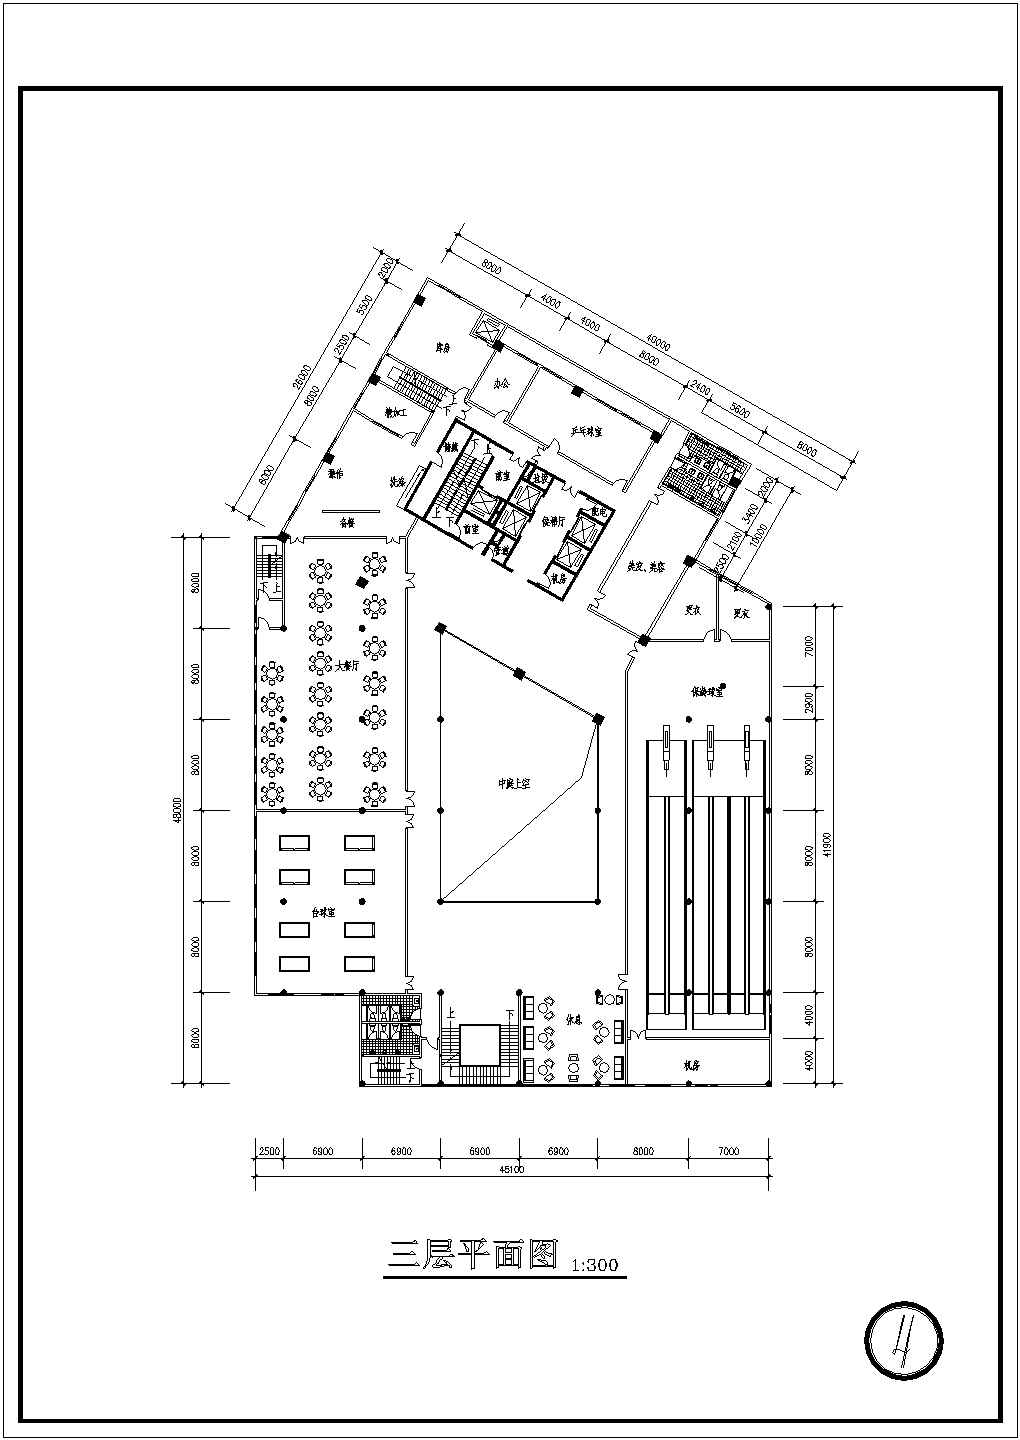 【好立得橱柜】高层豪华宾馆cad设计方案施工图纸(平面、立面)